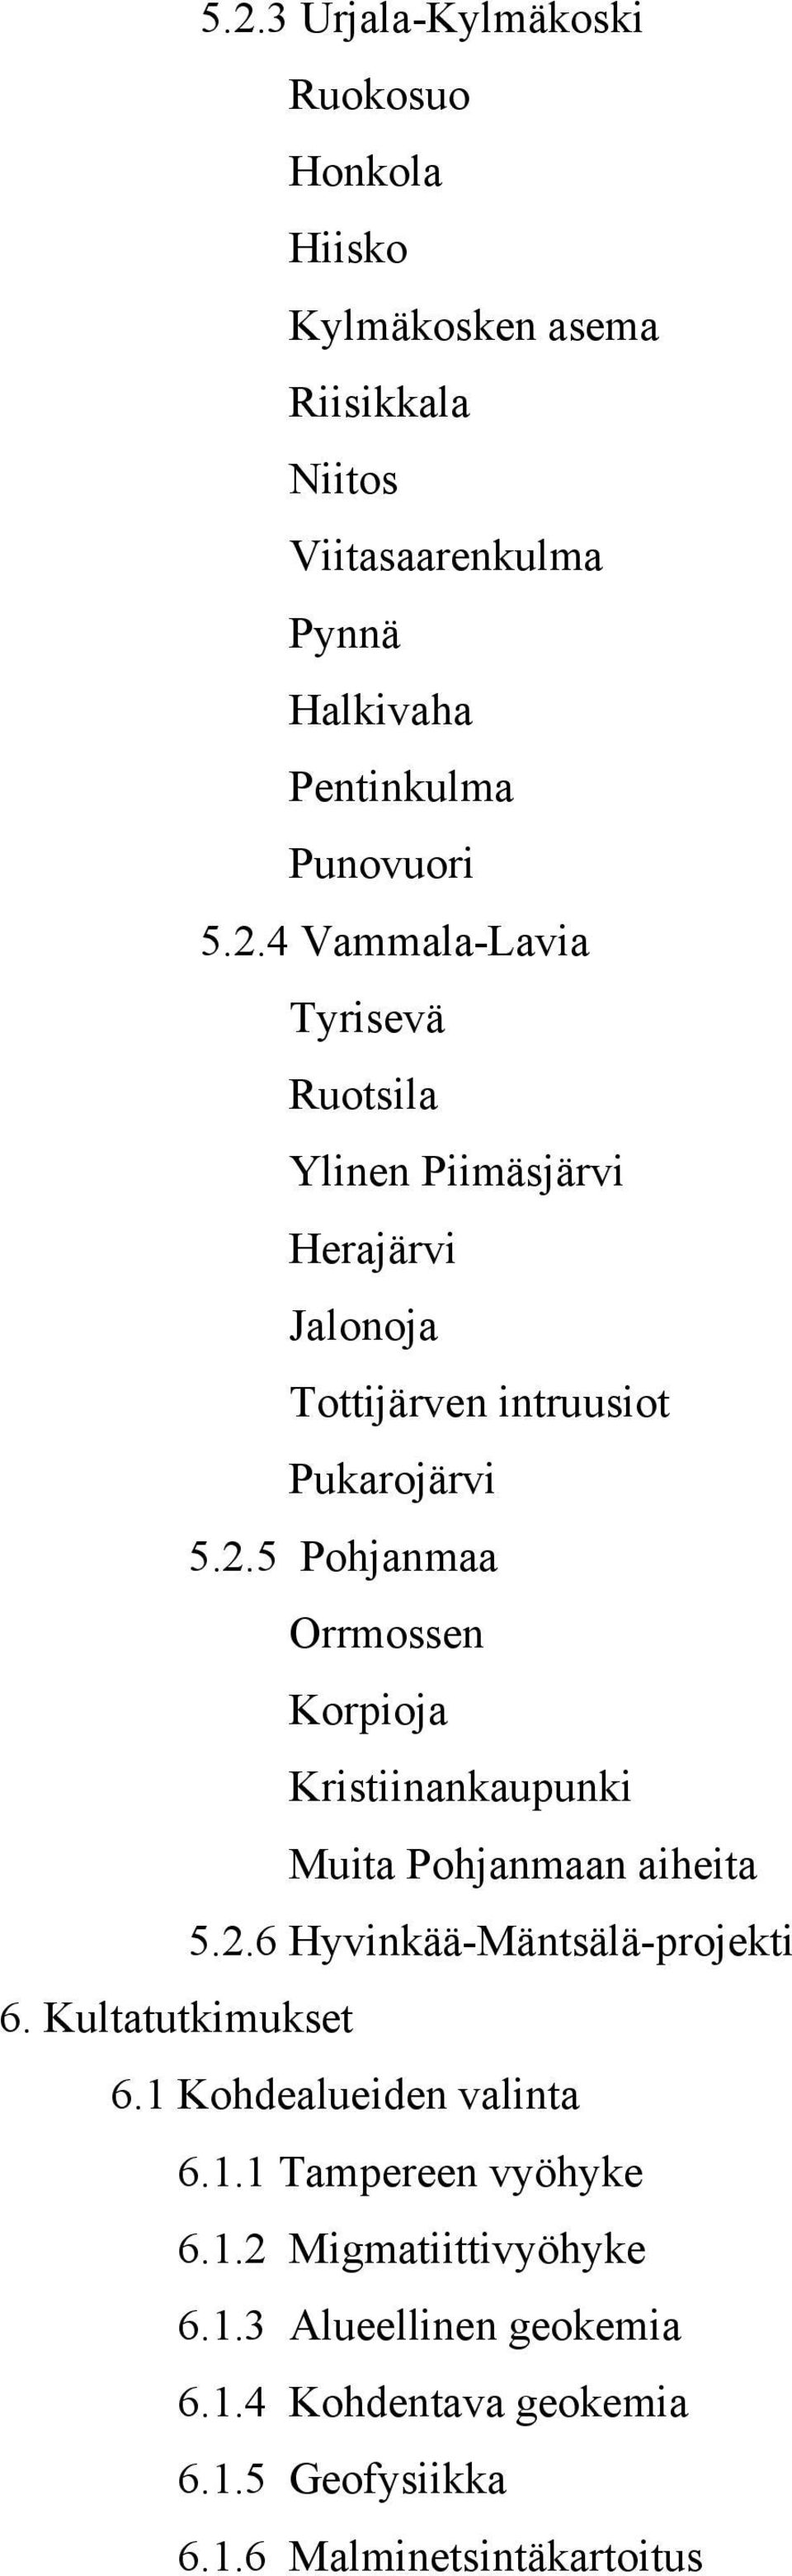 2.6 Hyvinkää-Mäntsälä-projekti 6. Kultatutkimukset 6.1 Kohdealueiden valinta 6.1.1 Tampereen vyöhyke 6.1.2 Migmatiittivyöhyke 6.1.3 Alueellinen geokemia 6.